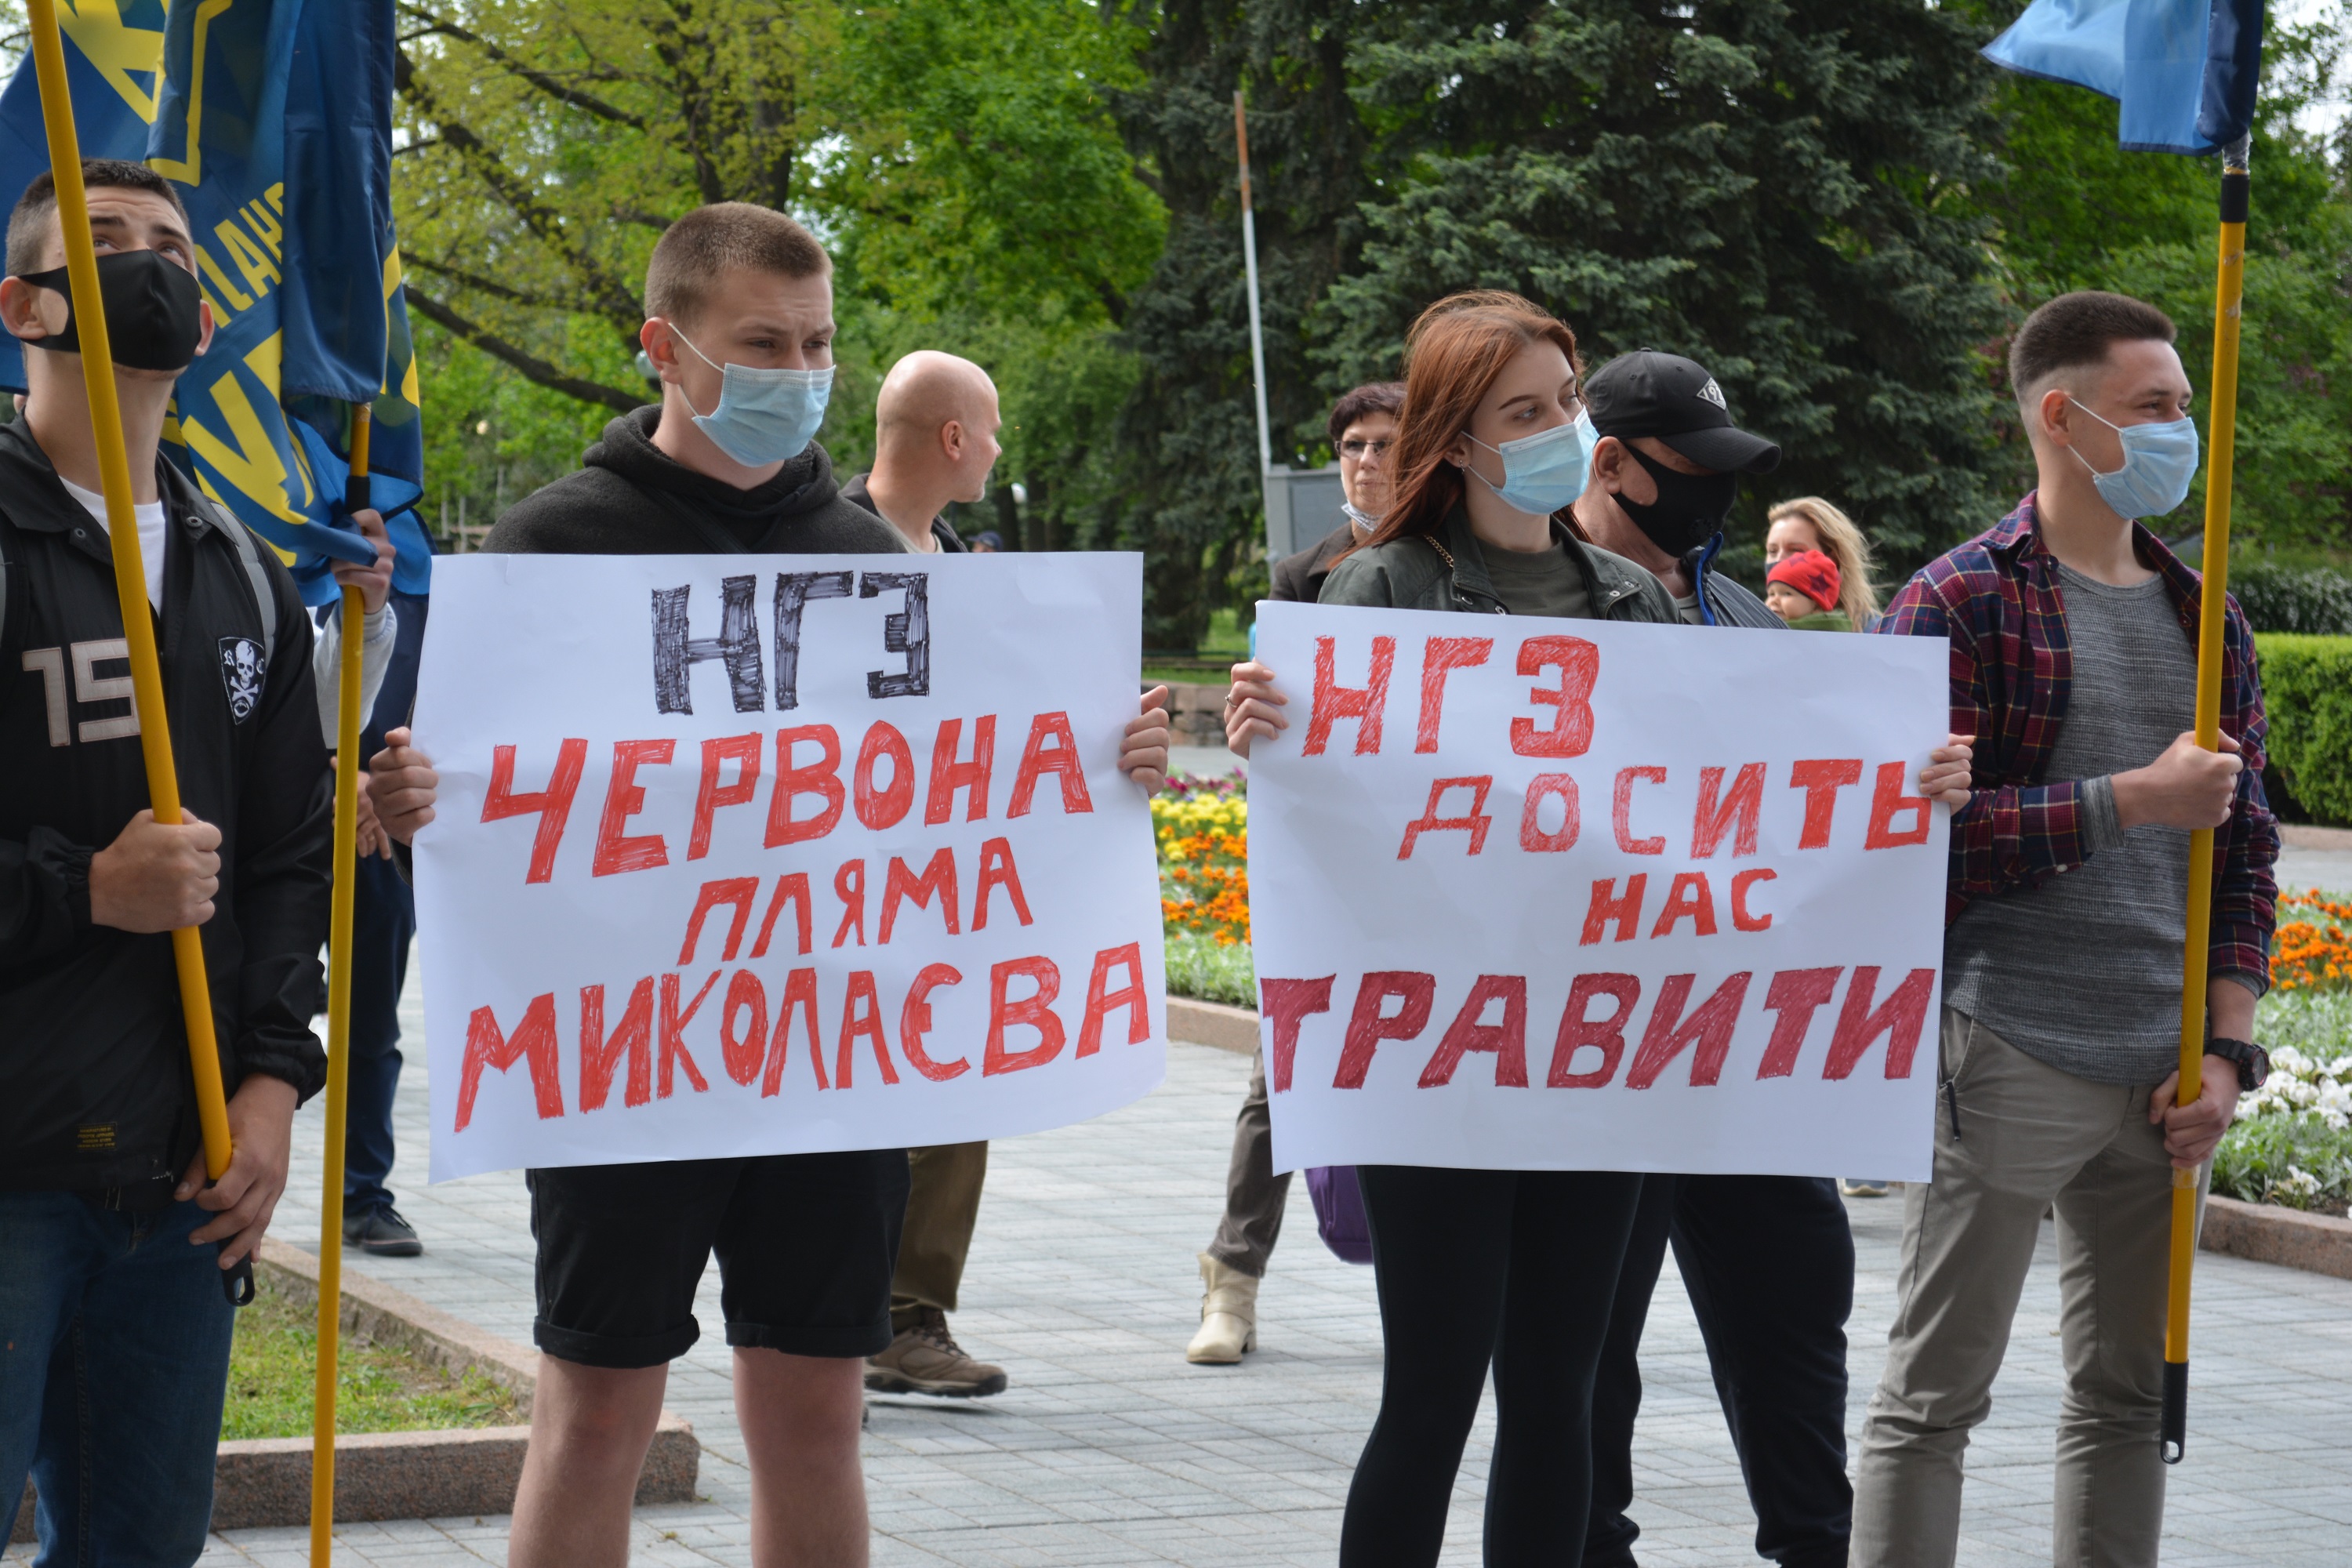 Підтоплення нацпарку та будівництво шламосховищ: жителі Миколаєва вийшли на екологічний протест